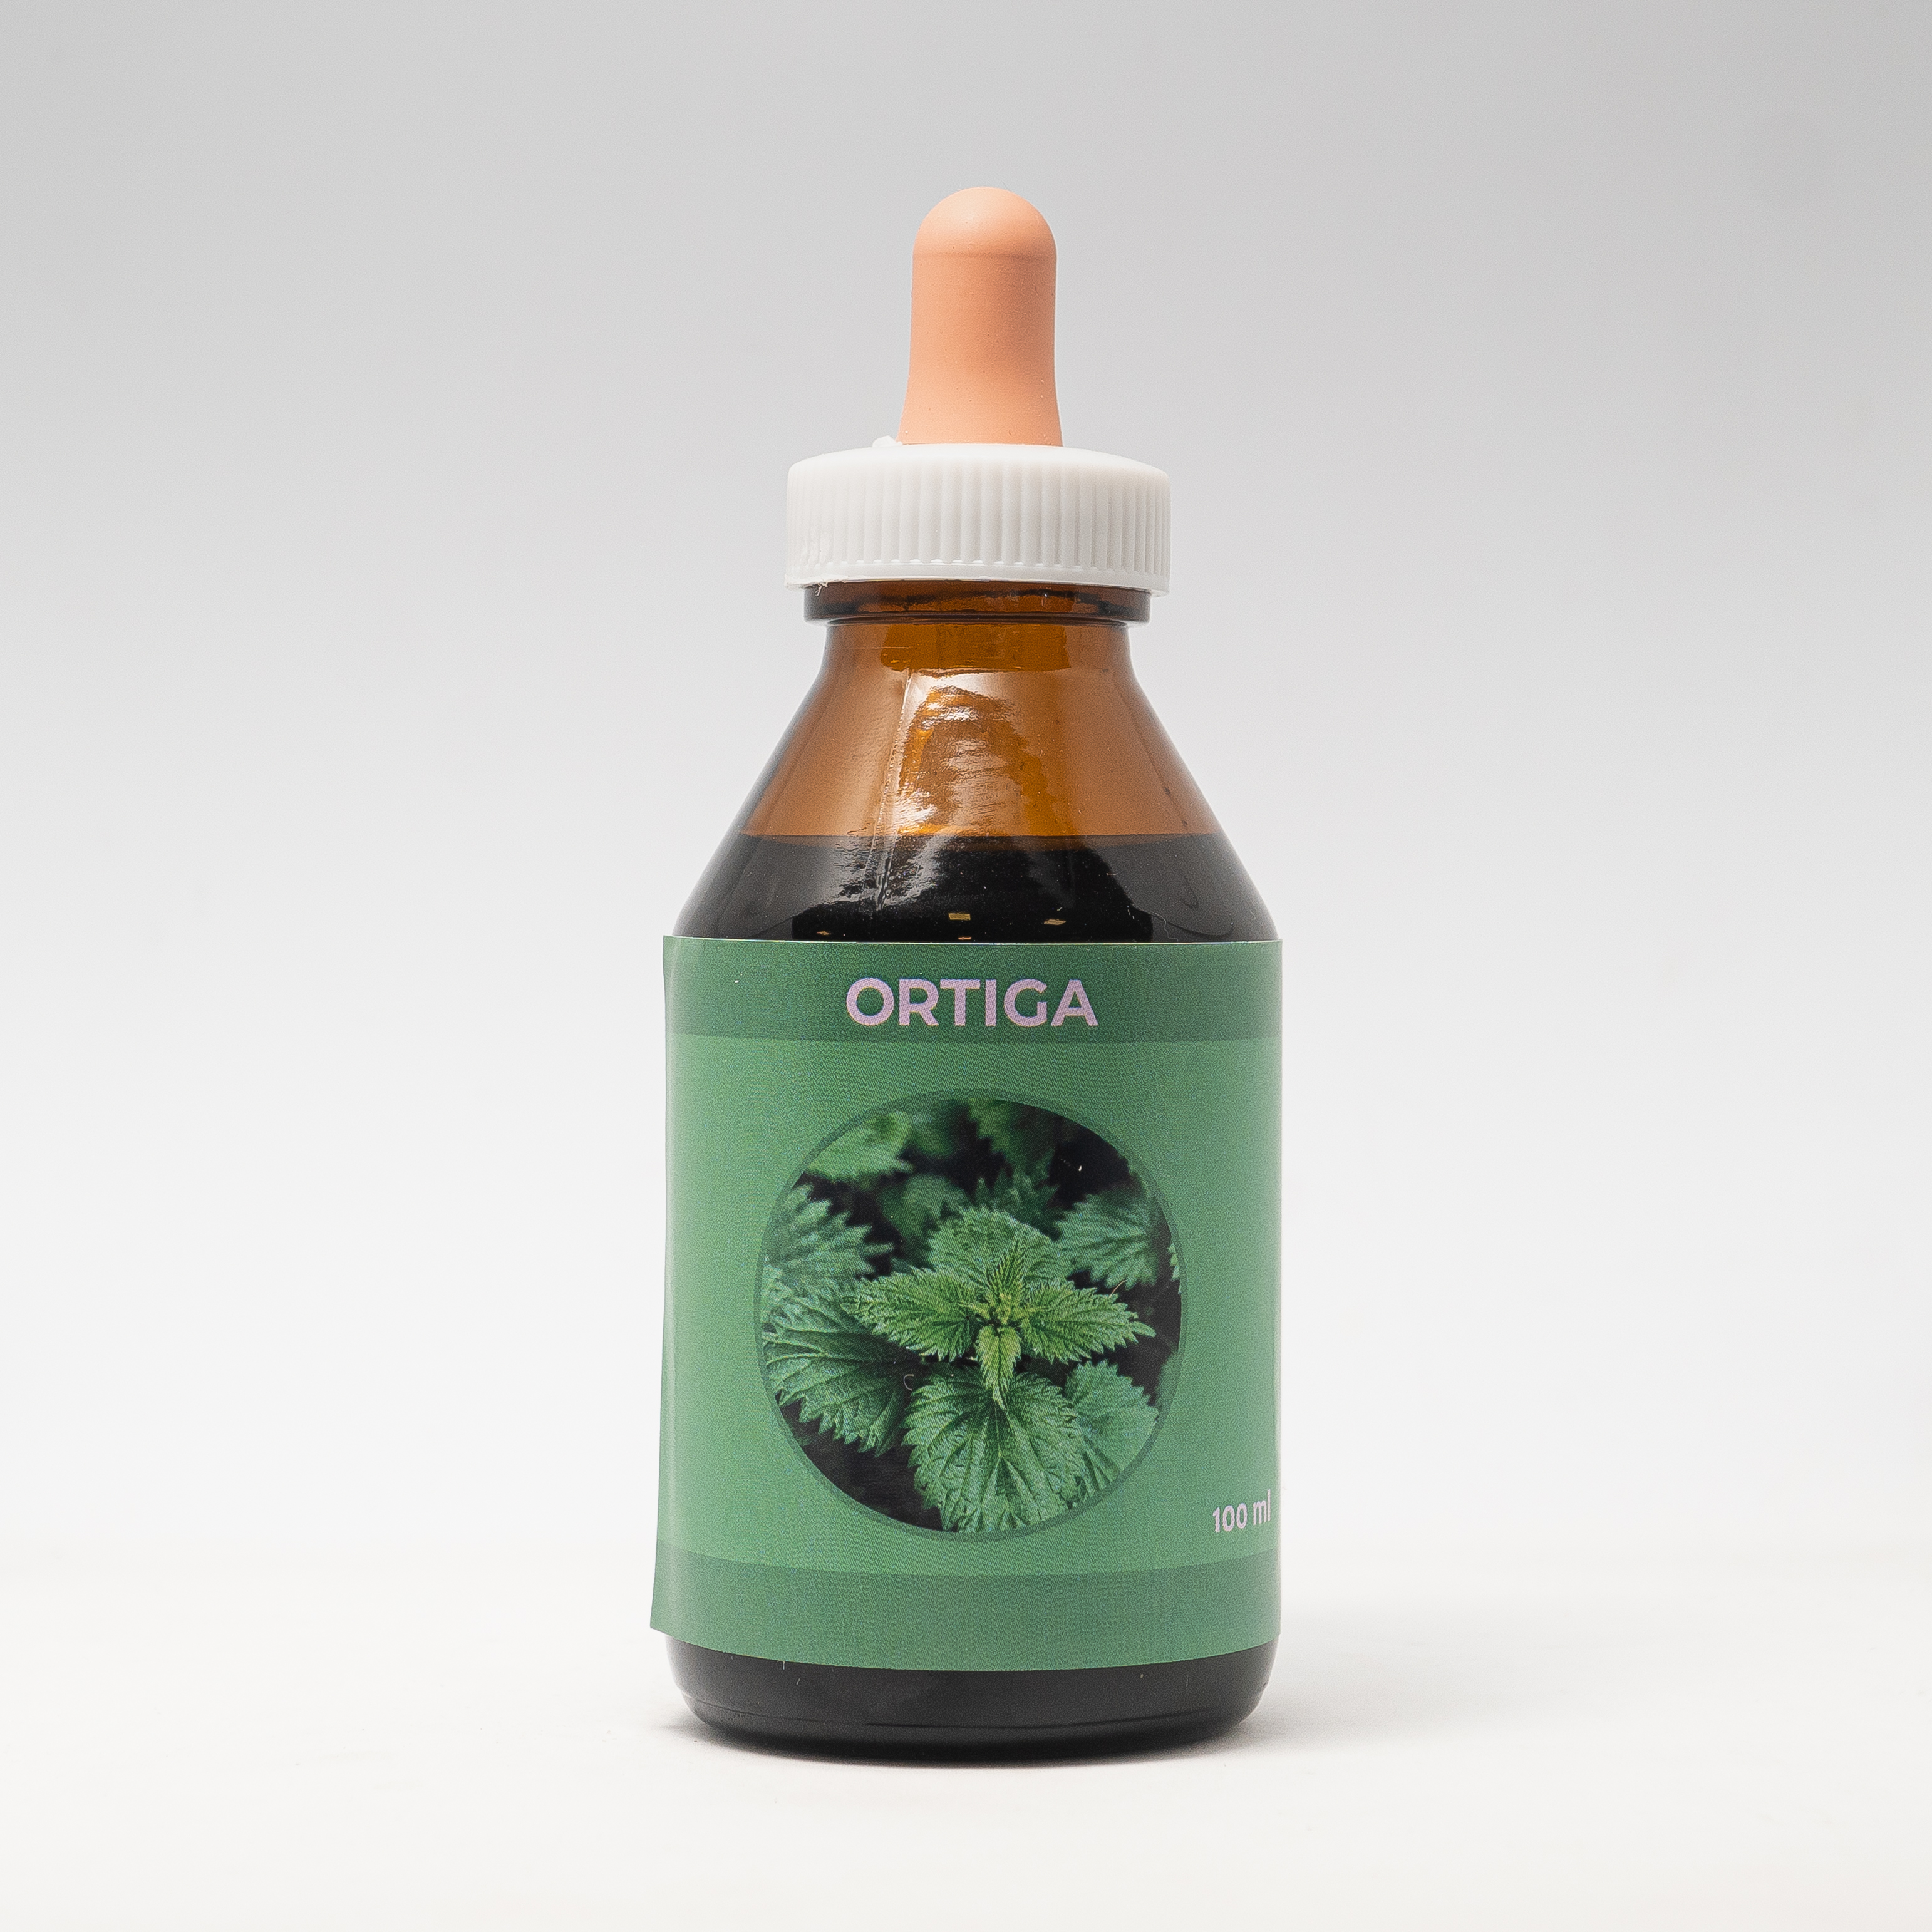  Ortiga  (Urtica dioica)